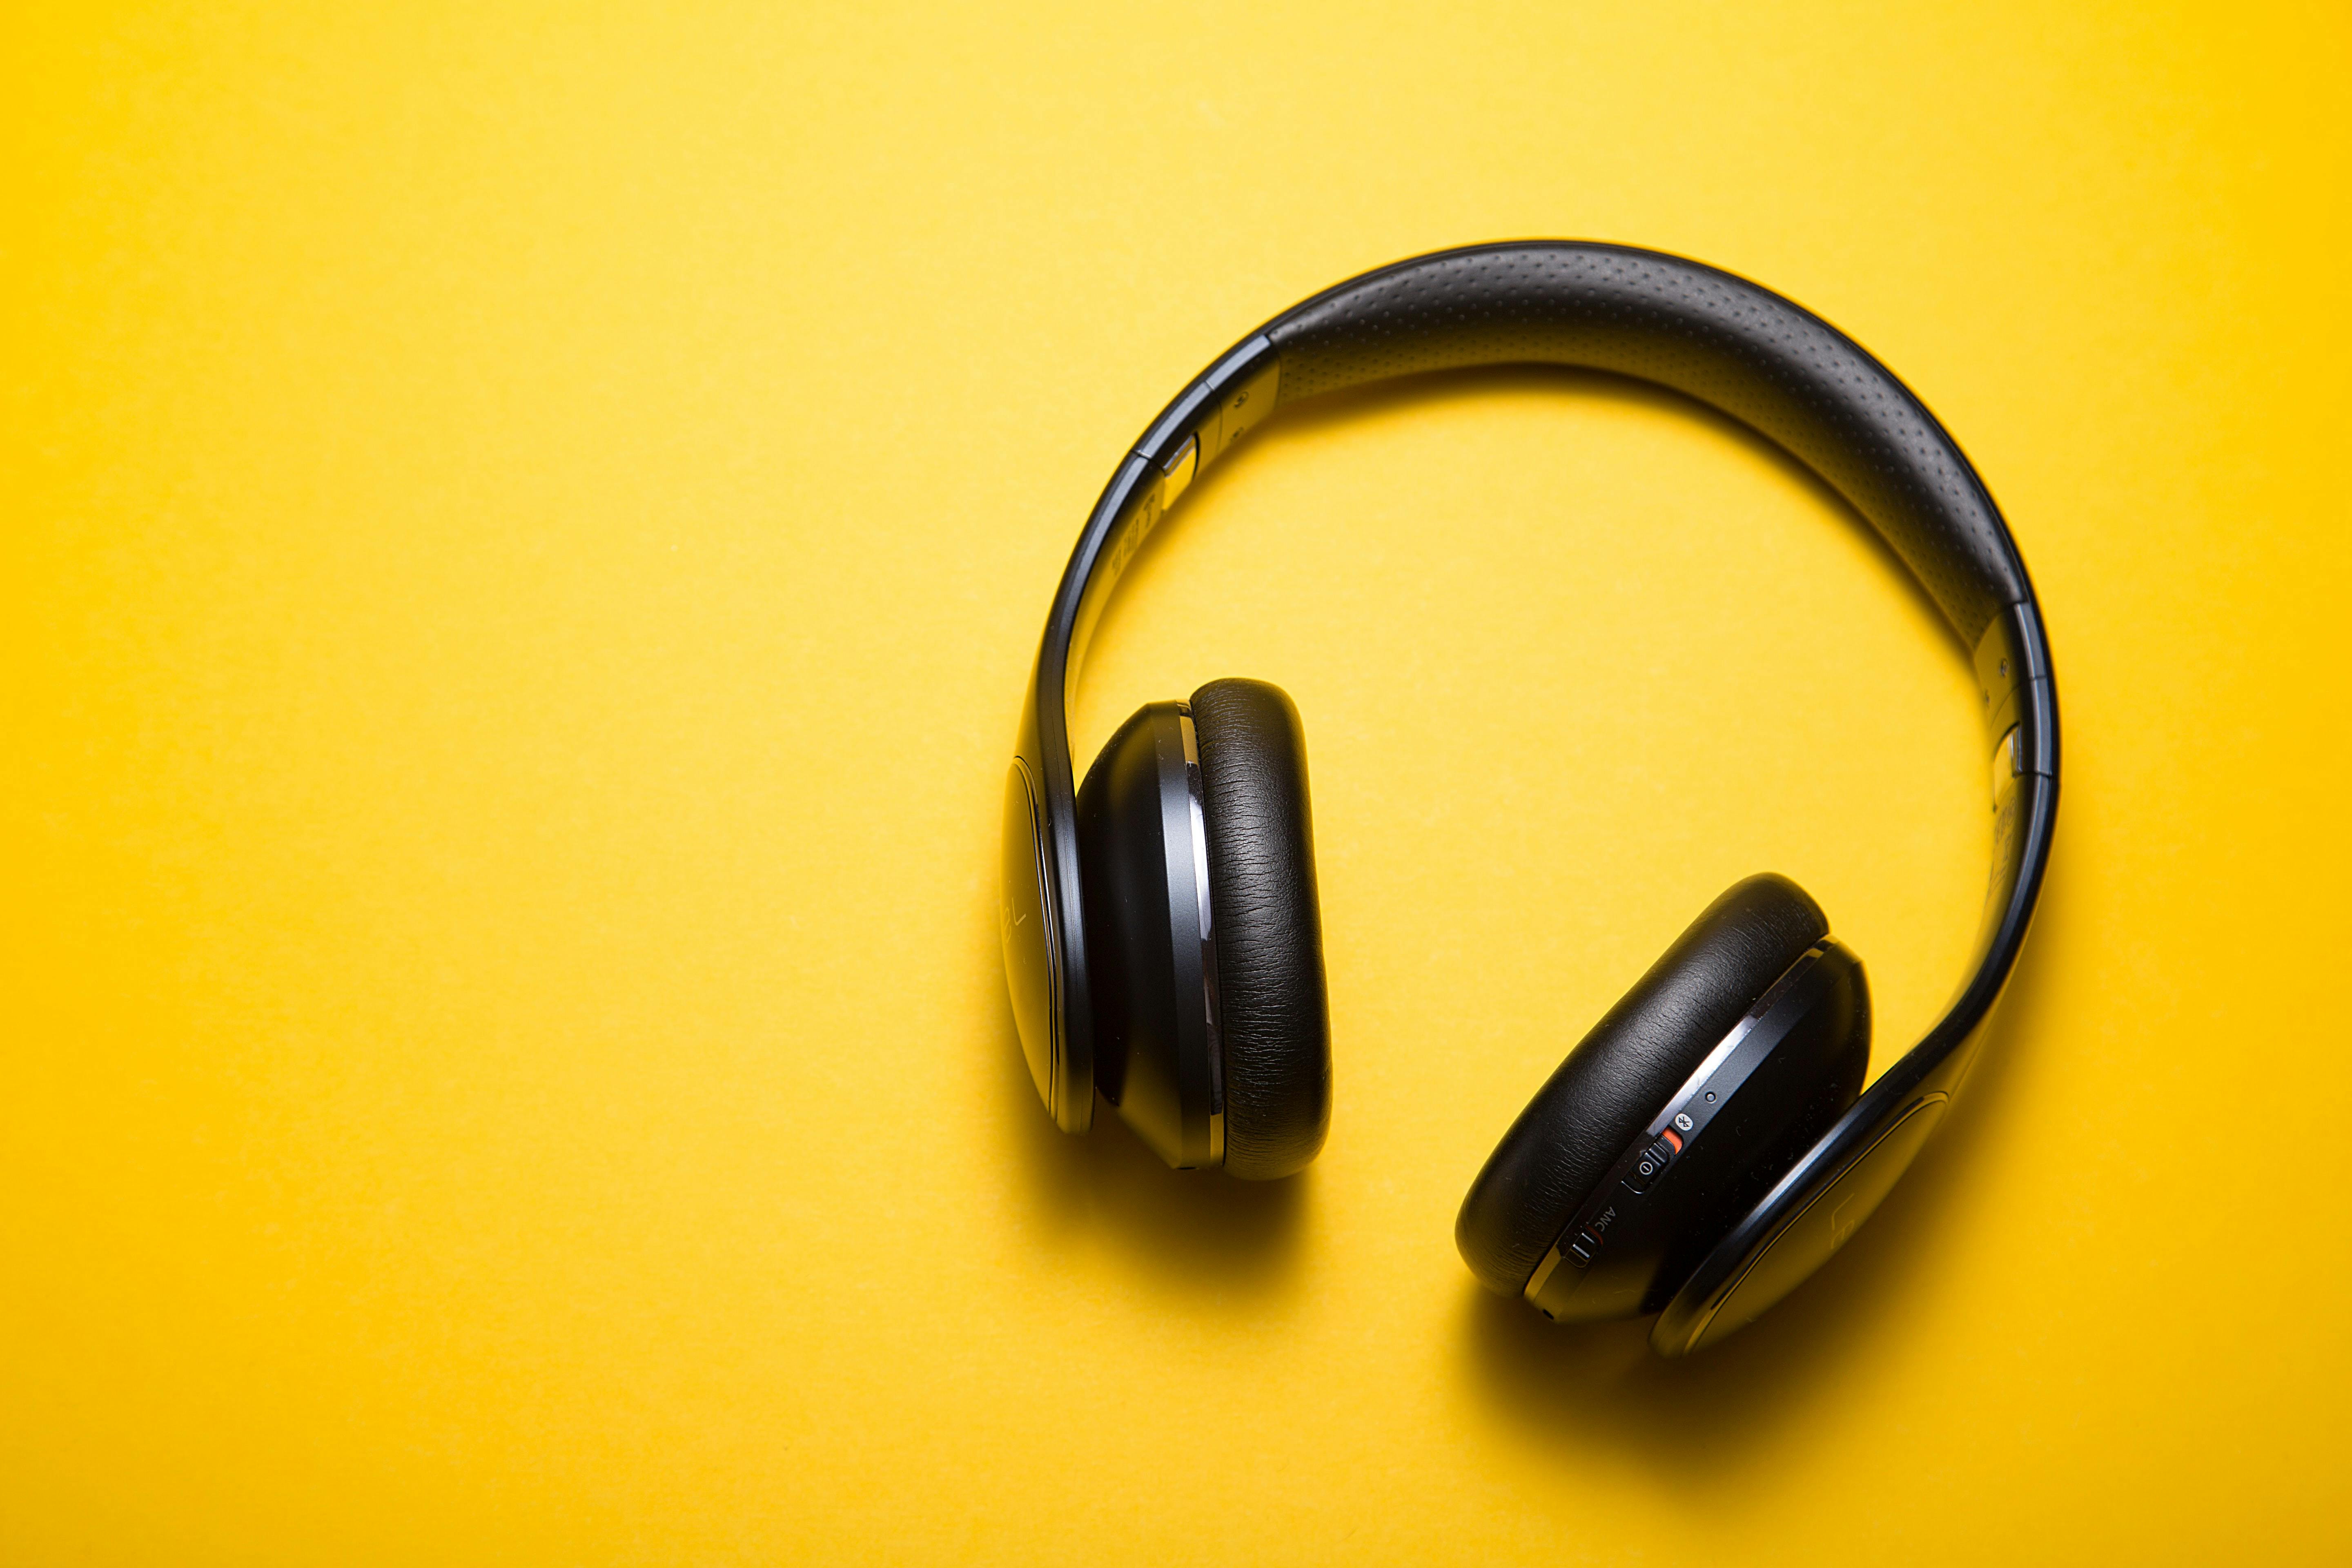 Black headphones on yellow background